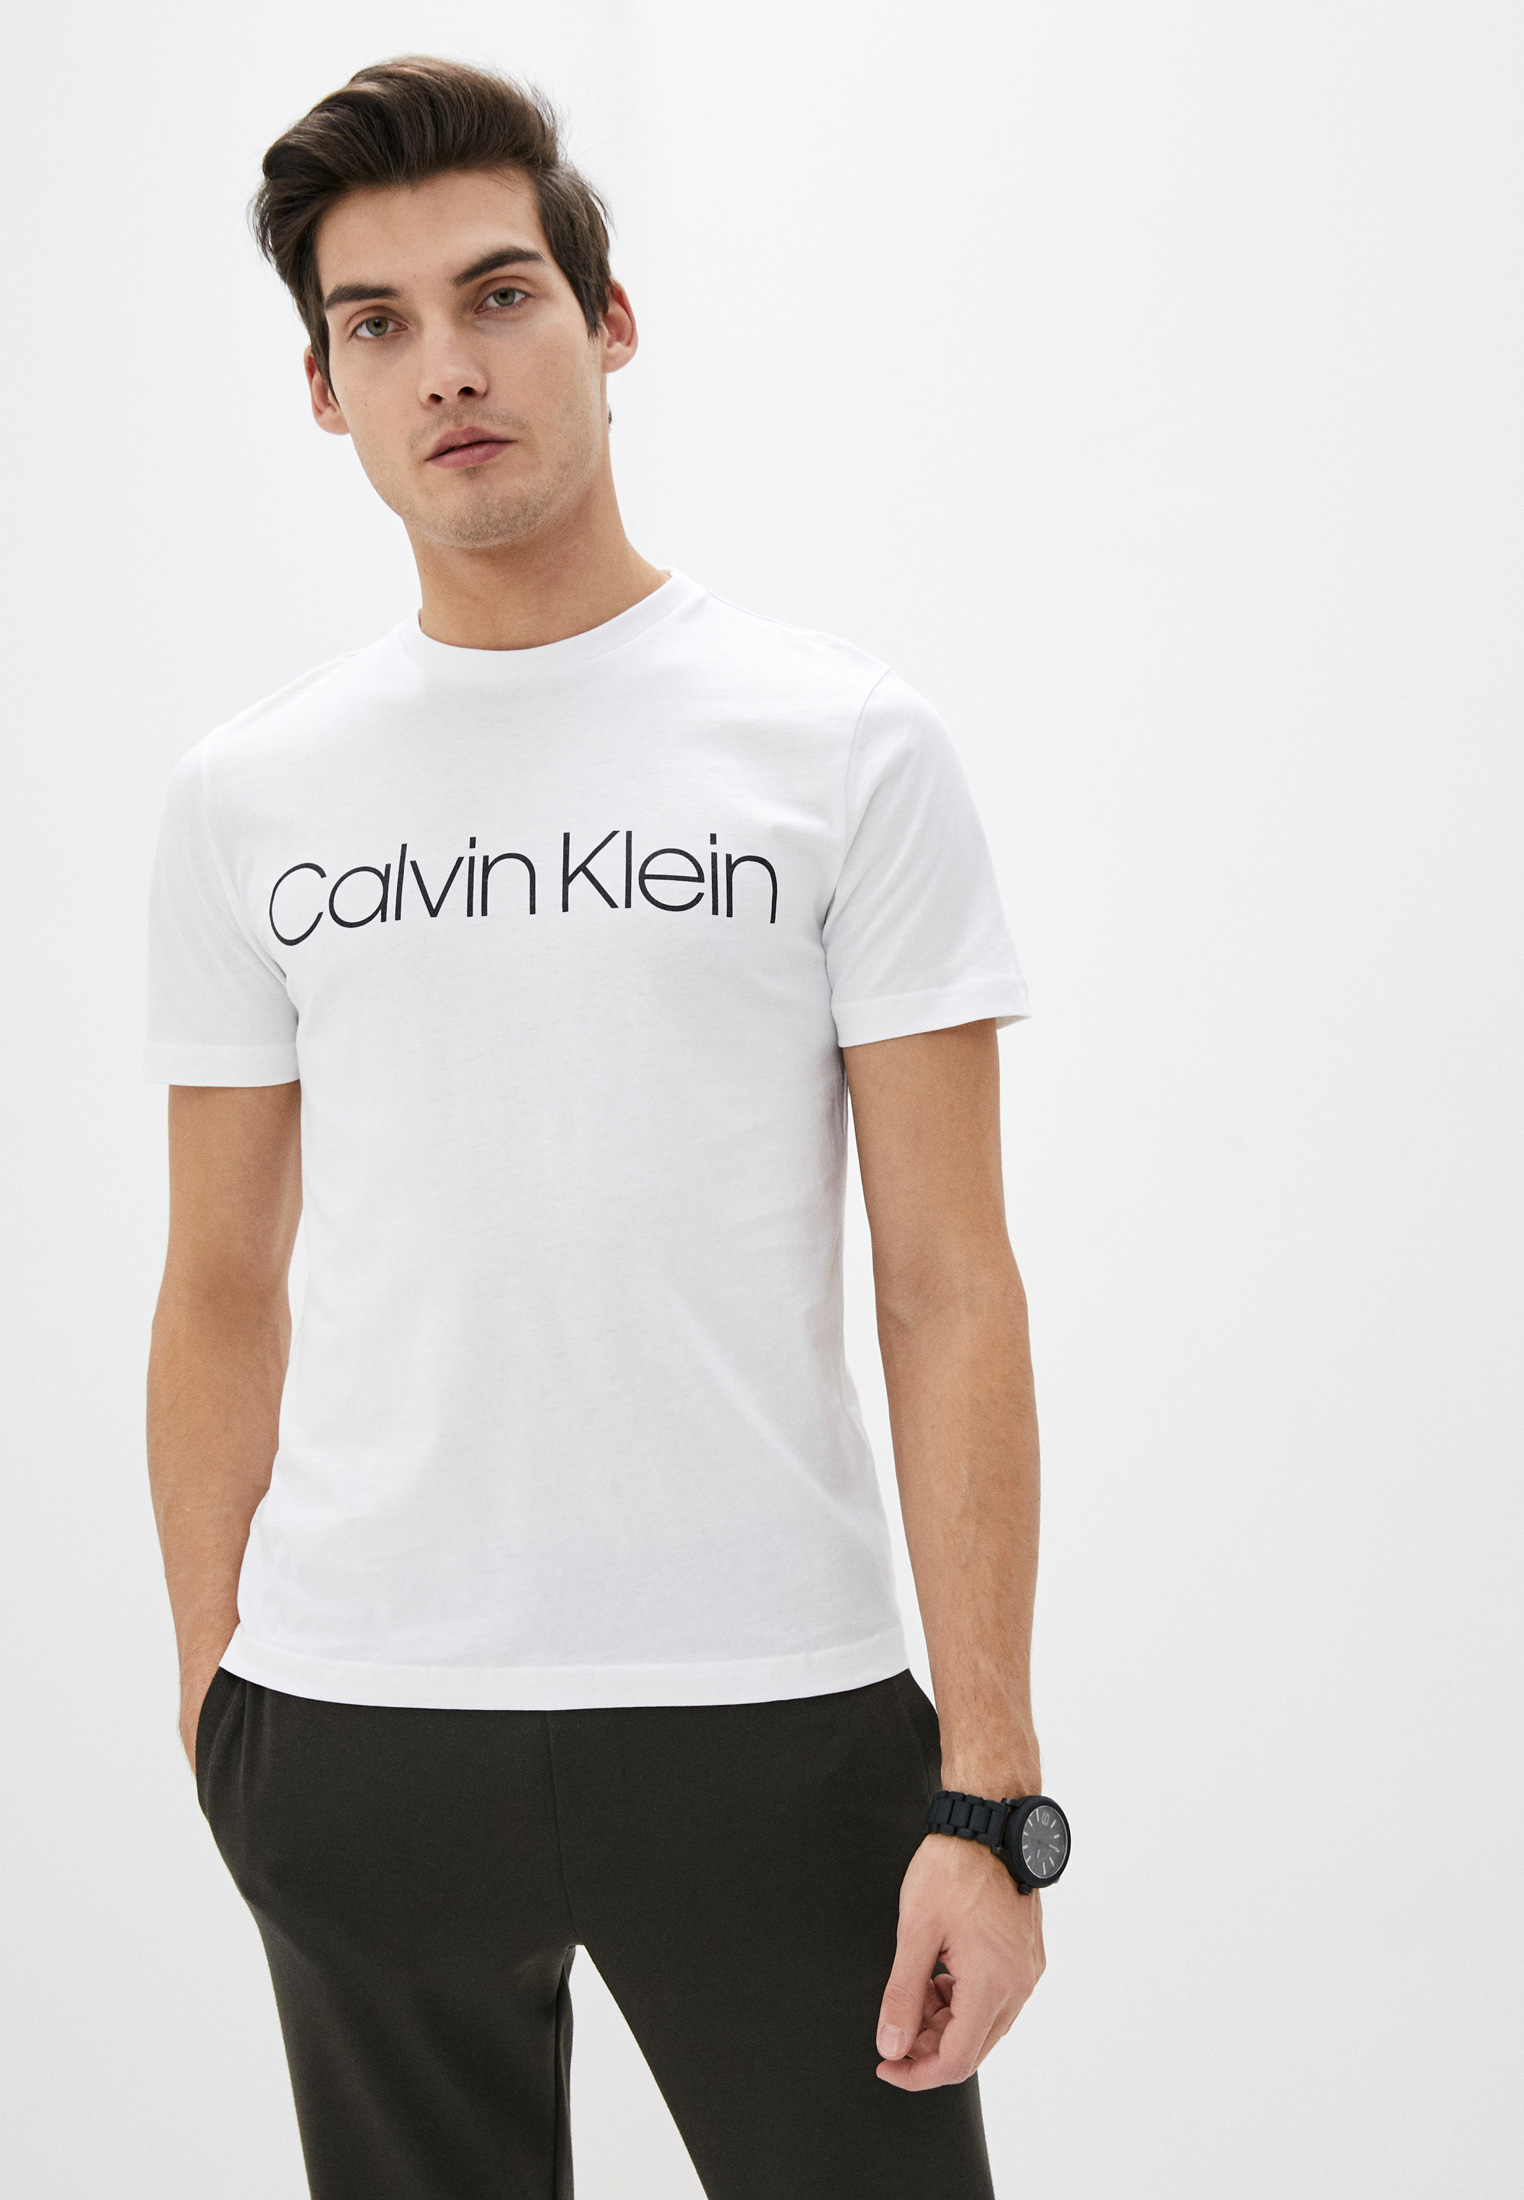 Мужская футболка Calvin Klein (Кельвин Кляйн) k10k104063: изображение 1